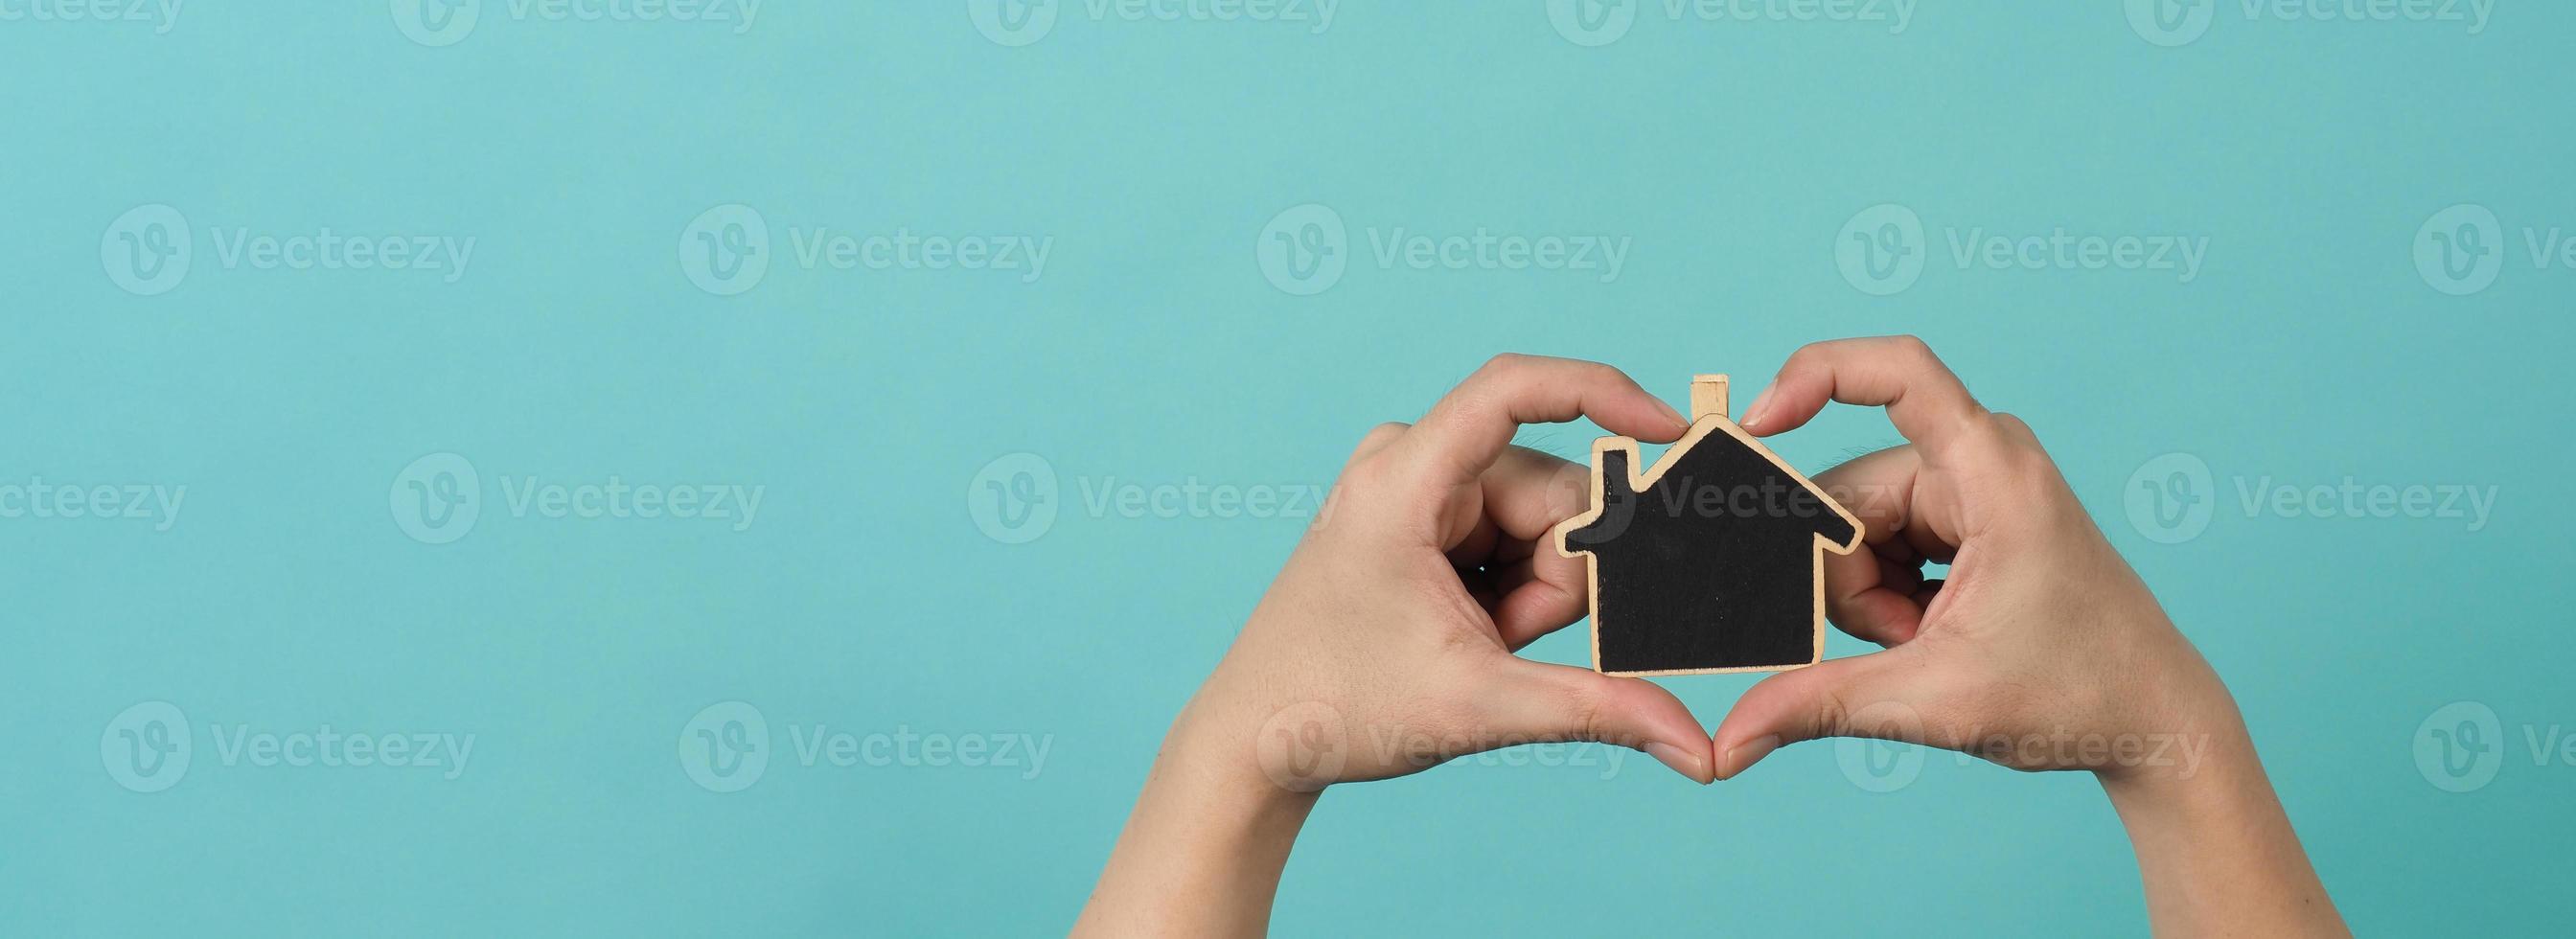 små trä hus i händer representera begrepp sådan som Hem vård familj kärlek verklig egendom hus skydd försäkring och inteckning. händer innehav små modell hus isolerat på blå grön studio bakgrund. foto